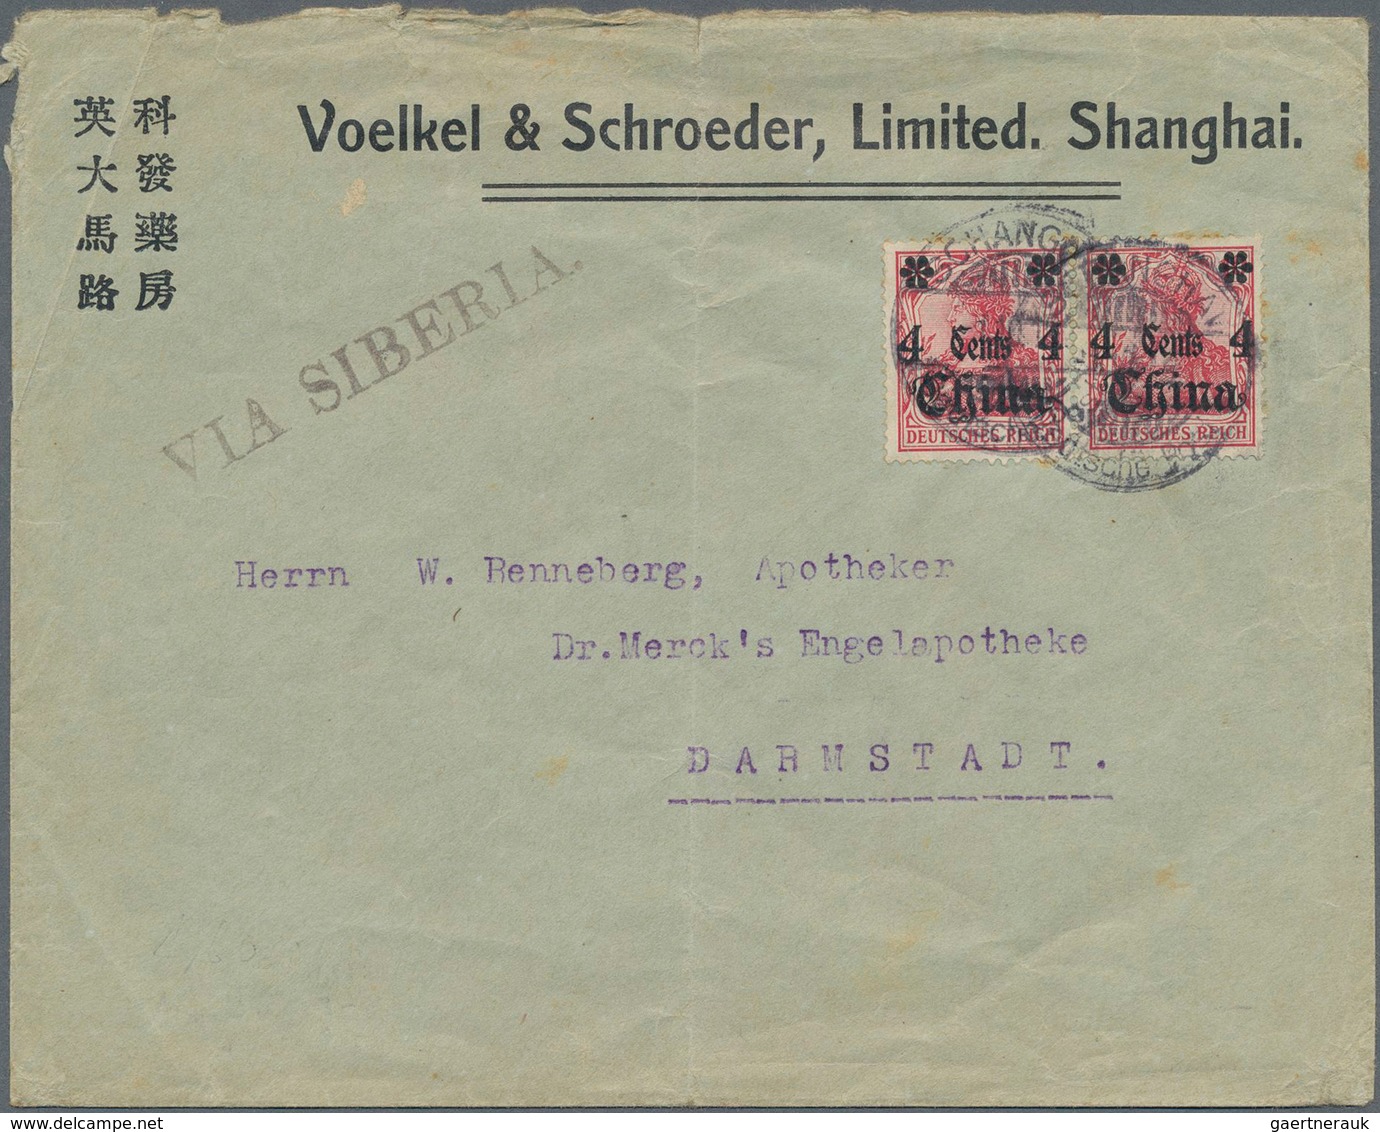 Deutsche Post in China: 1891/1912, kleine Partie von acht Bedarfs-Belegen "Dt. Post in China", dabei